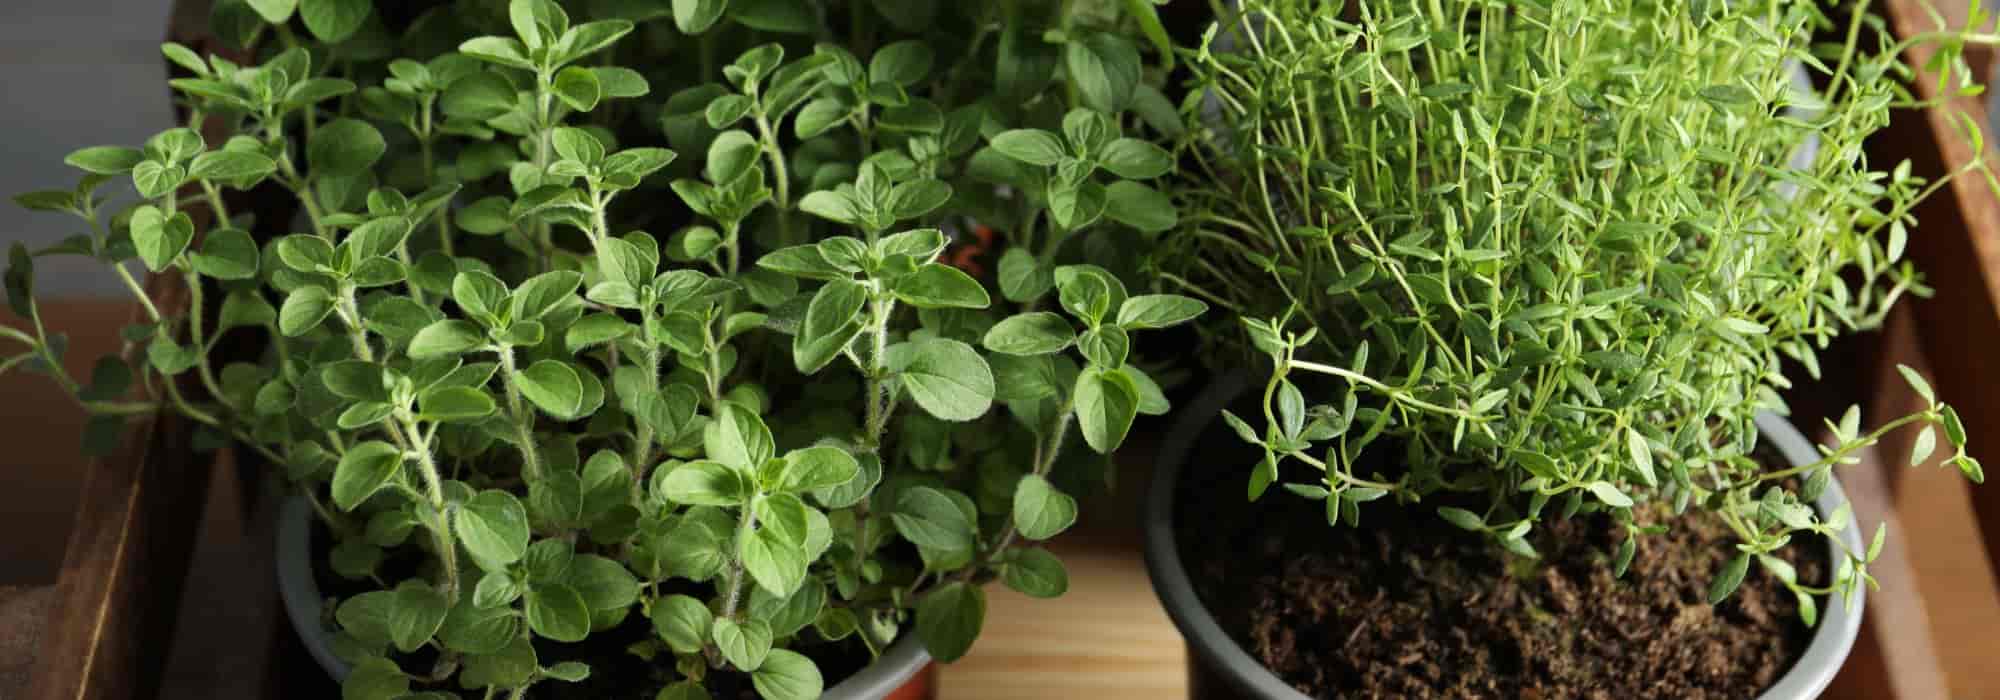 5 plantes aromatiques à avoir dans sa cuisine